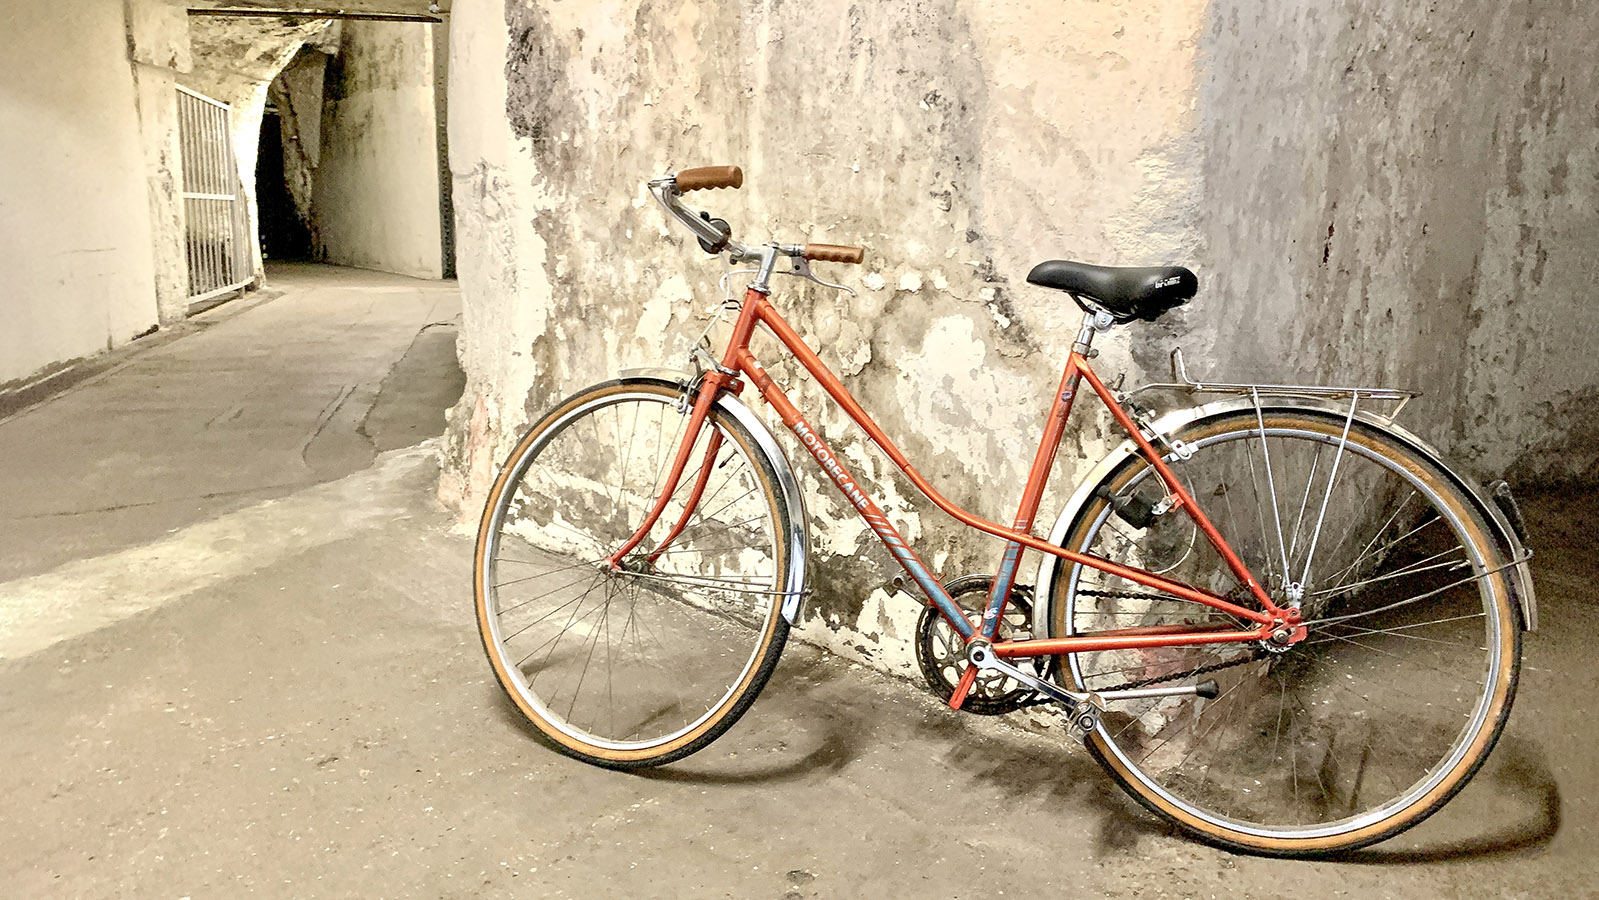 Losgeradelt: Eine Stunde lang geht es per Vintage-Rad durch die Keller von Bouvet-Laduvay. Foto: Hilke Maunder